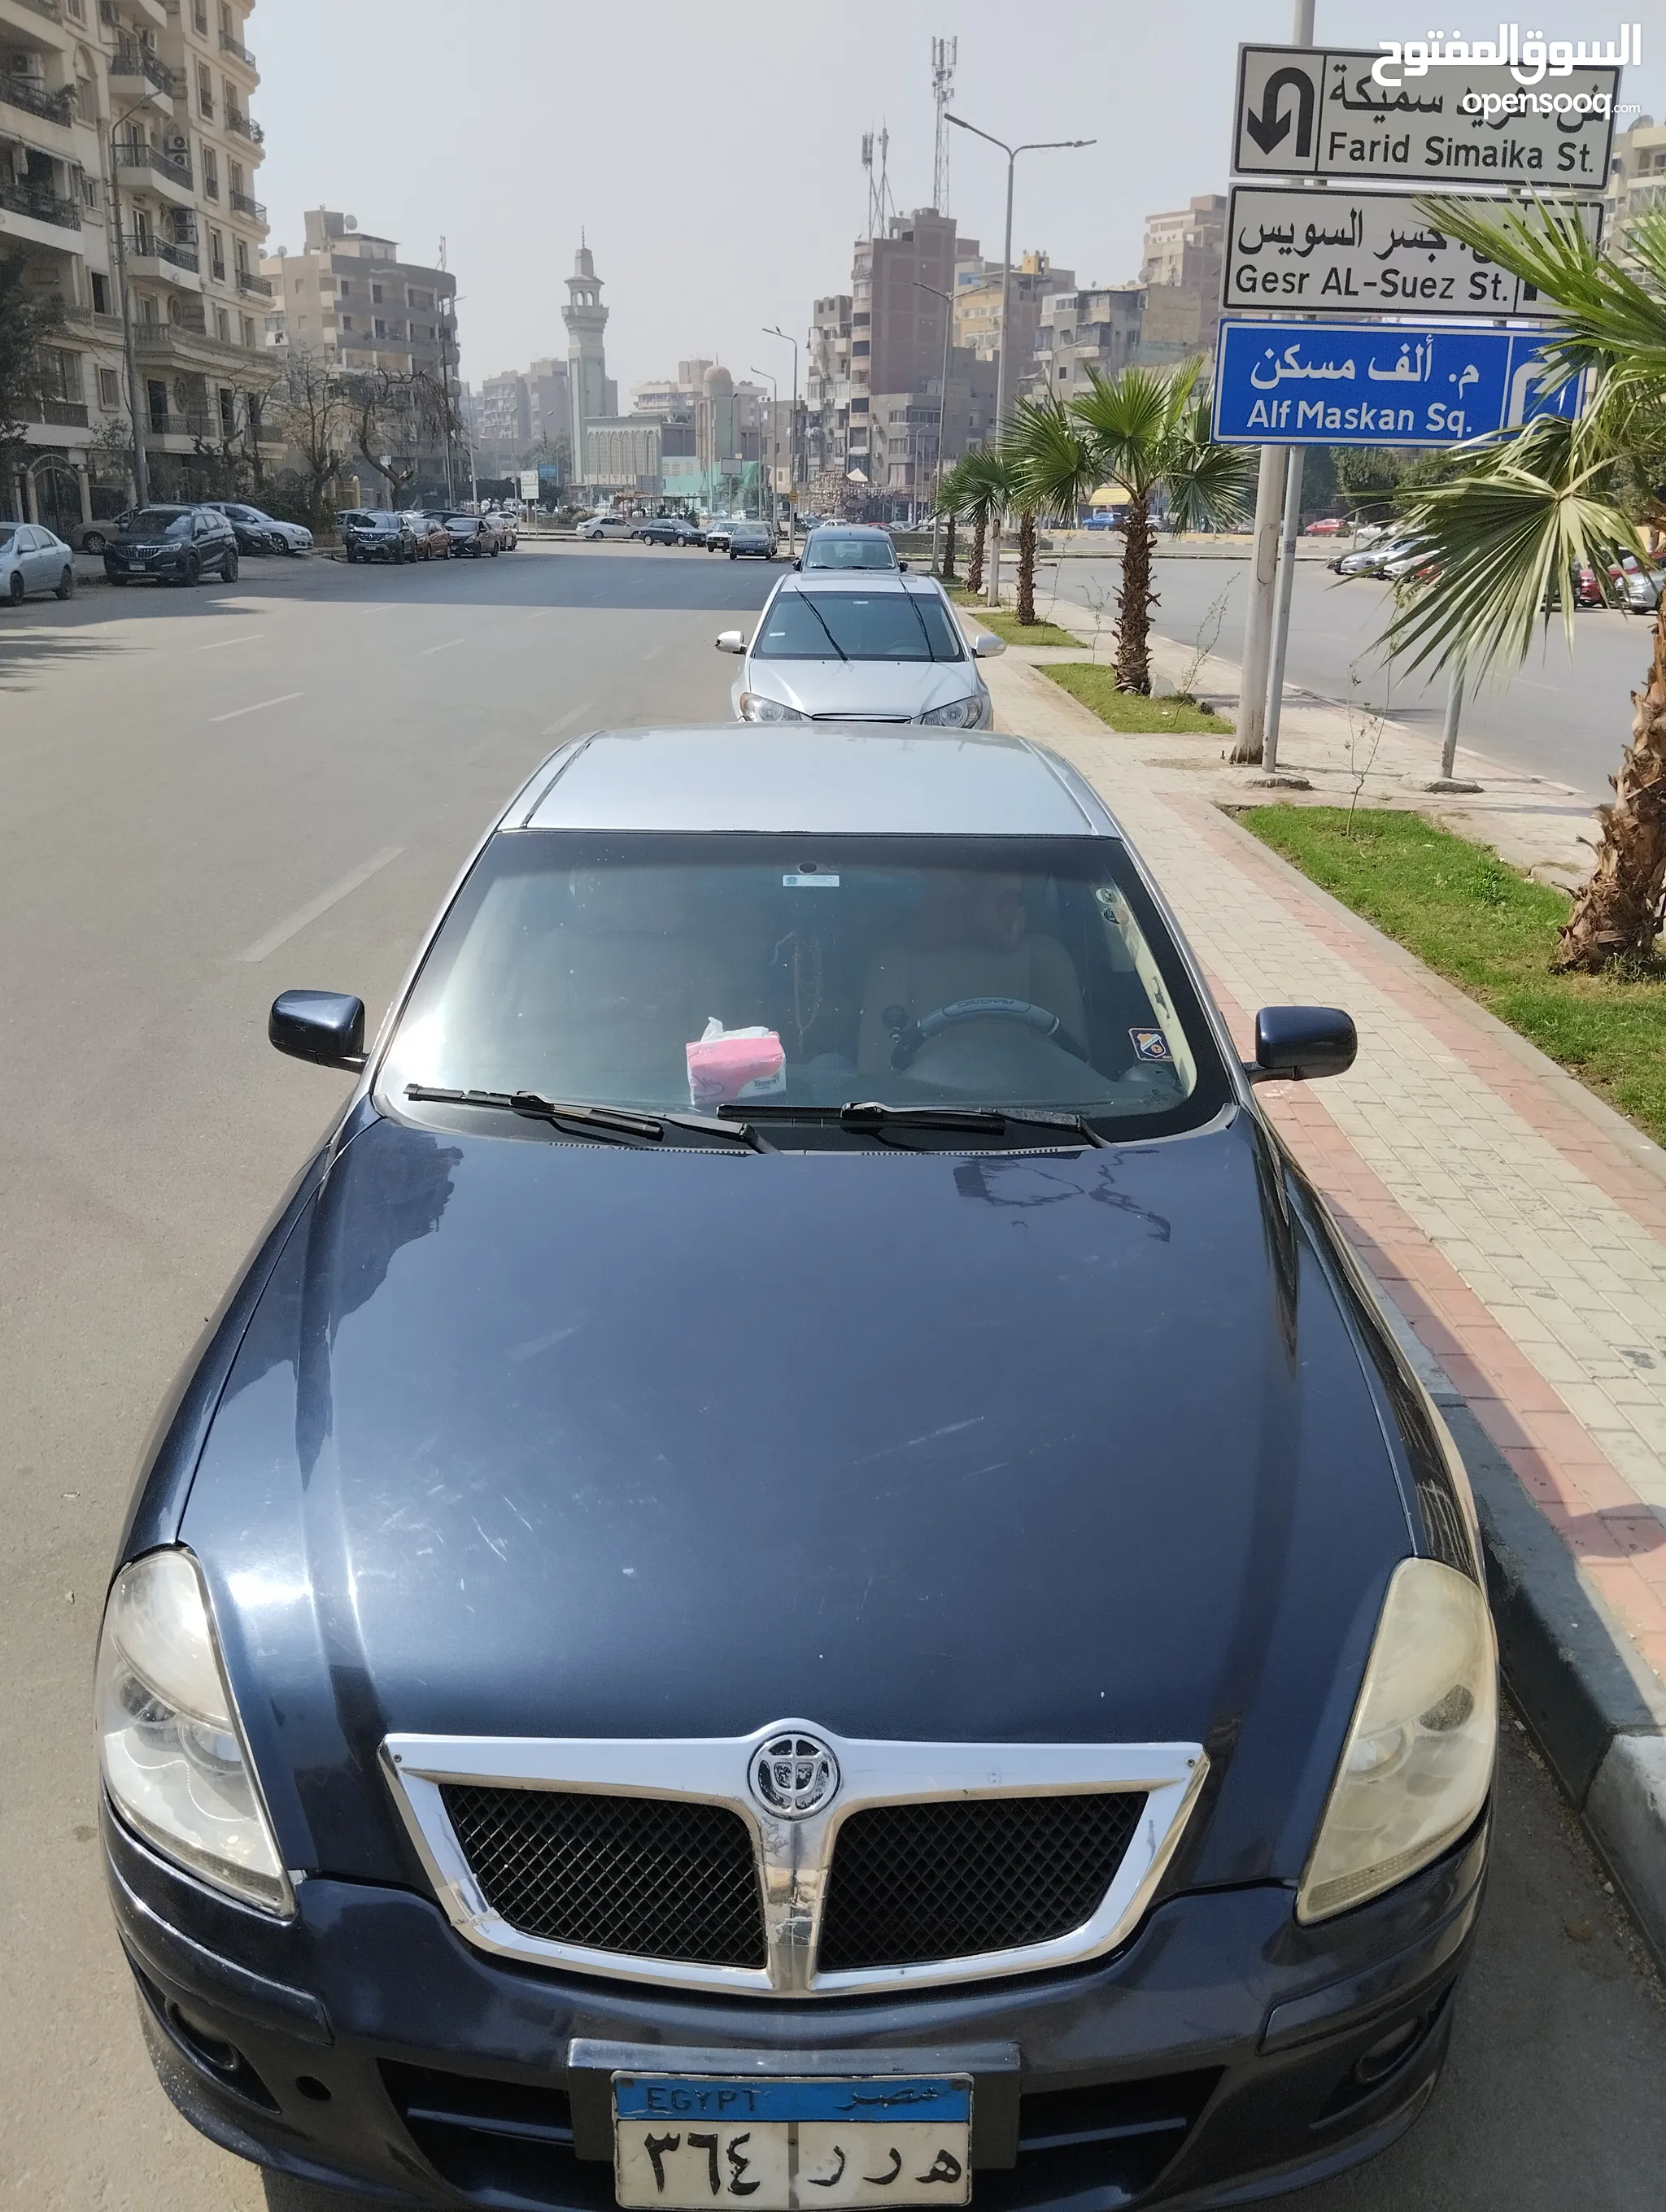 سيارات بريليانس للبيع : ارخص الاسعار في مصر : جميع موديلات سيارة بريليانس :  مستعملة وجديدة